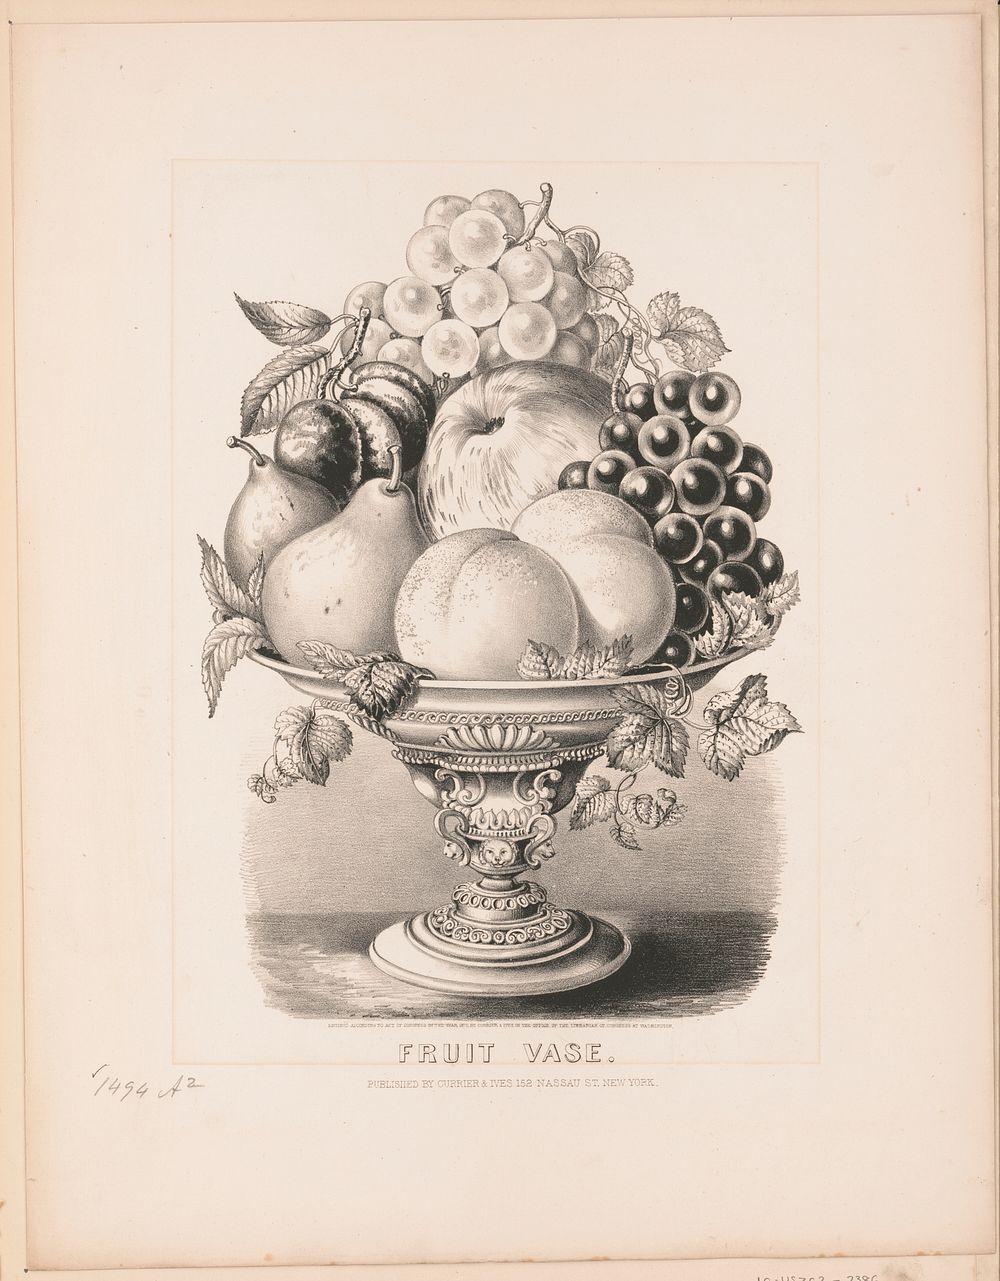 Fruit vase, Currier & Ives.